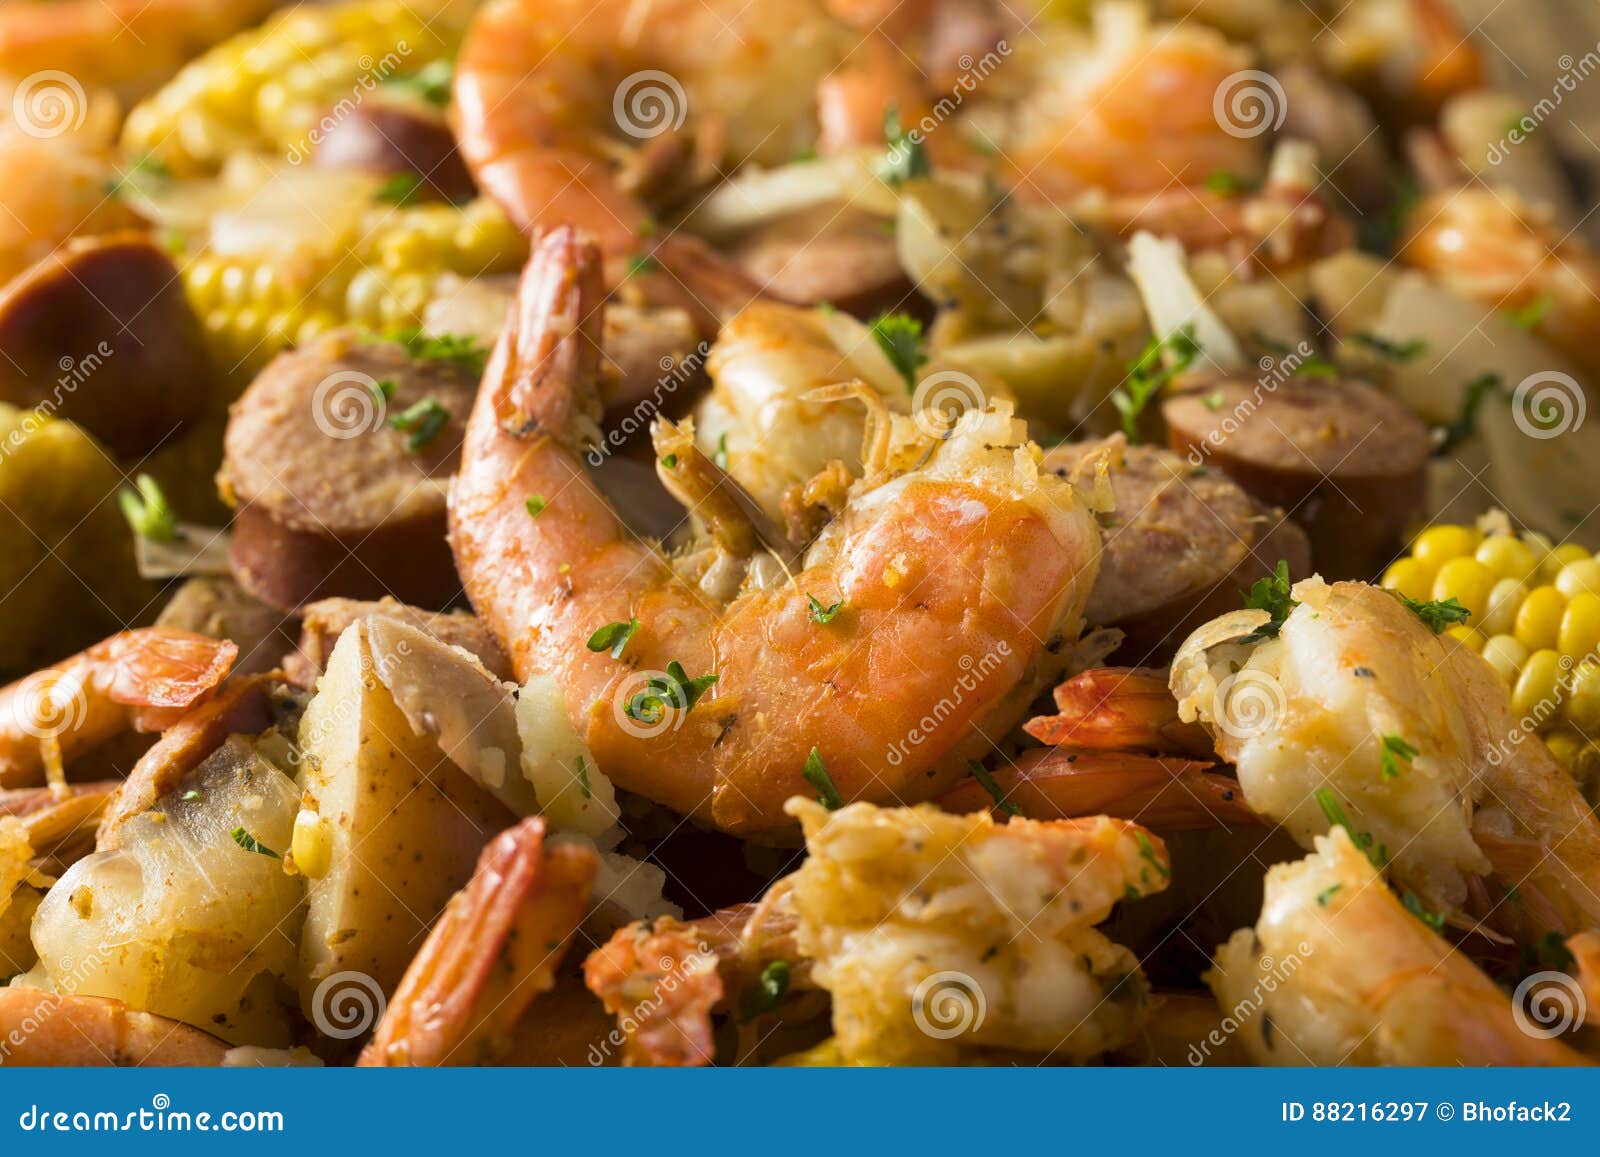 homemade traditional cajun shrimp boil